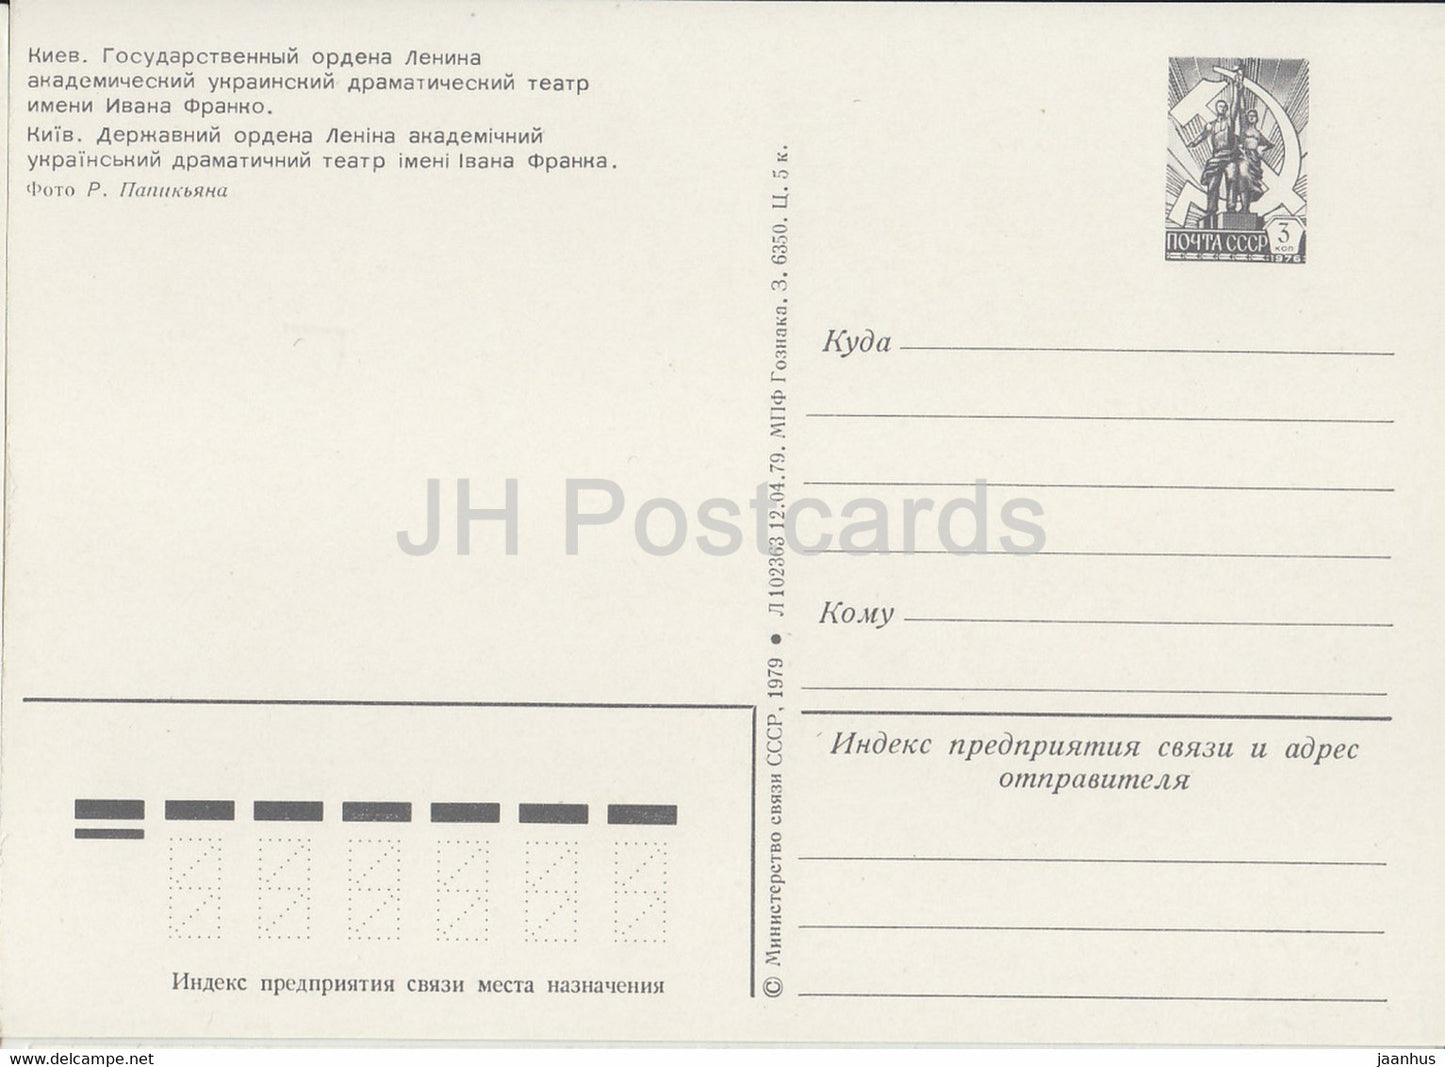 Kyiv - Kiev - Ivan Franko Drama Theatre - postal stationery - 1979 - Ukraine USSR - unused